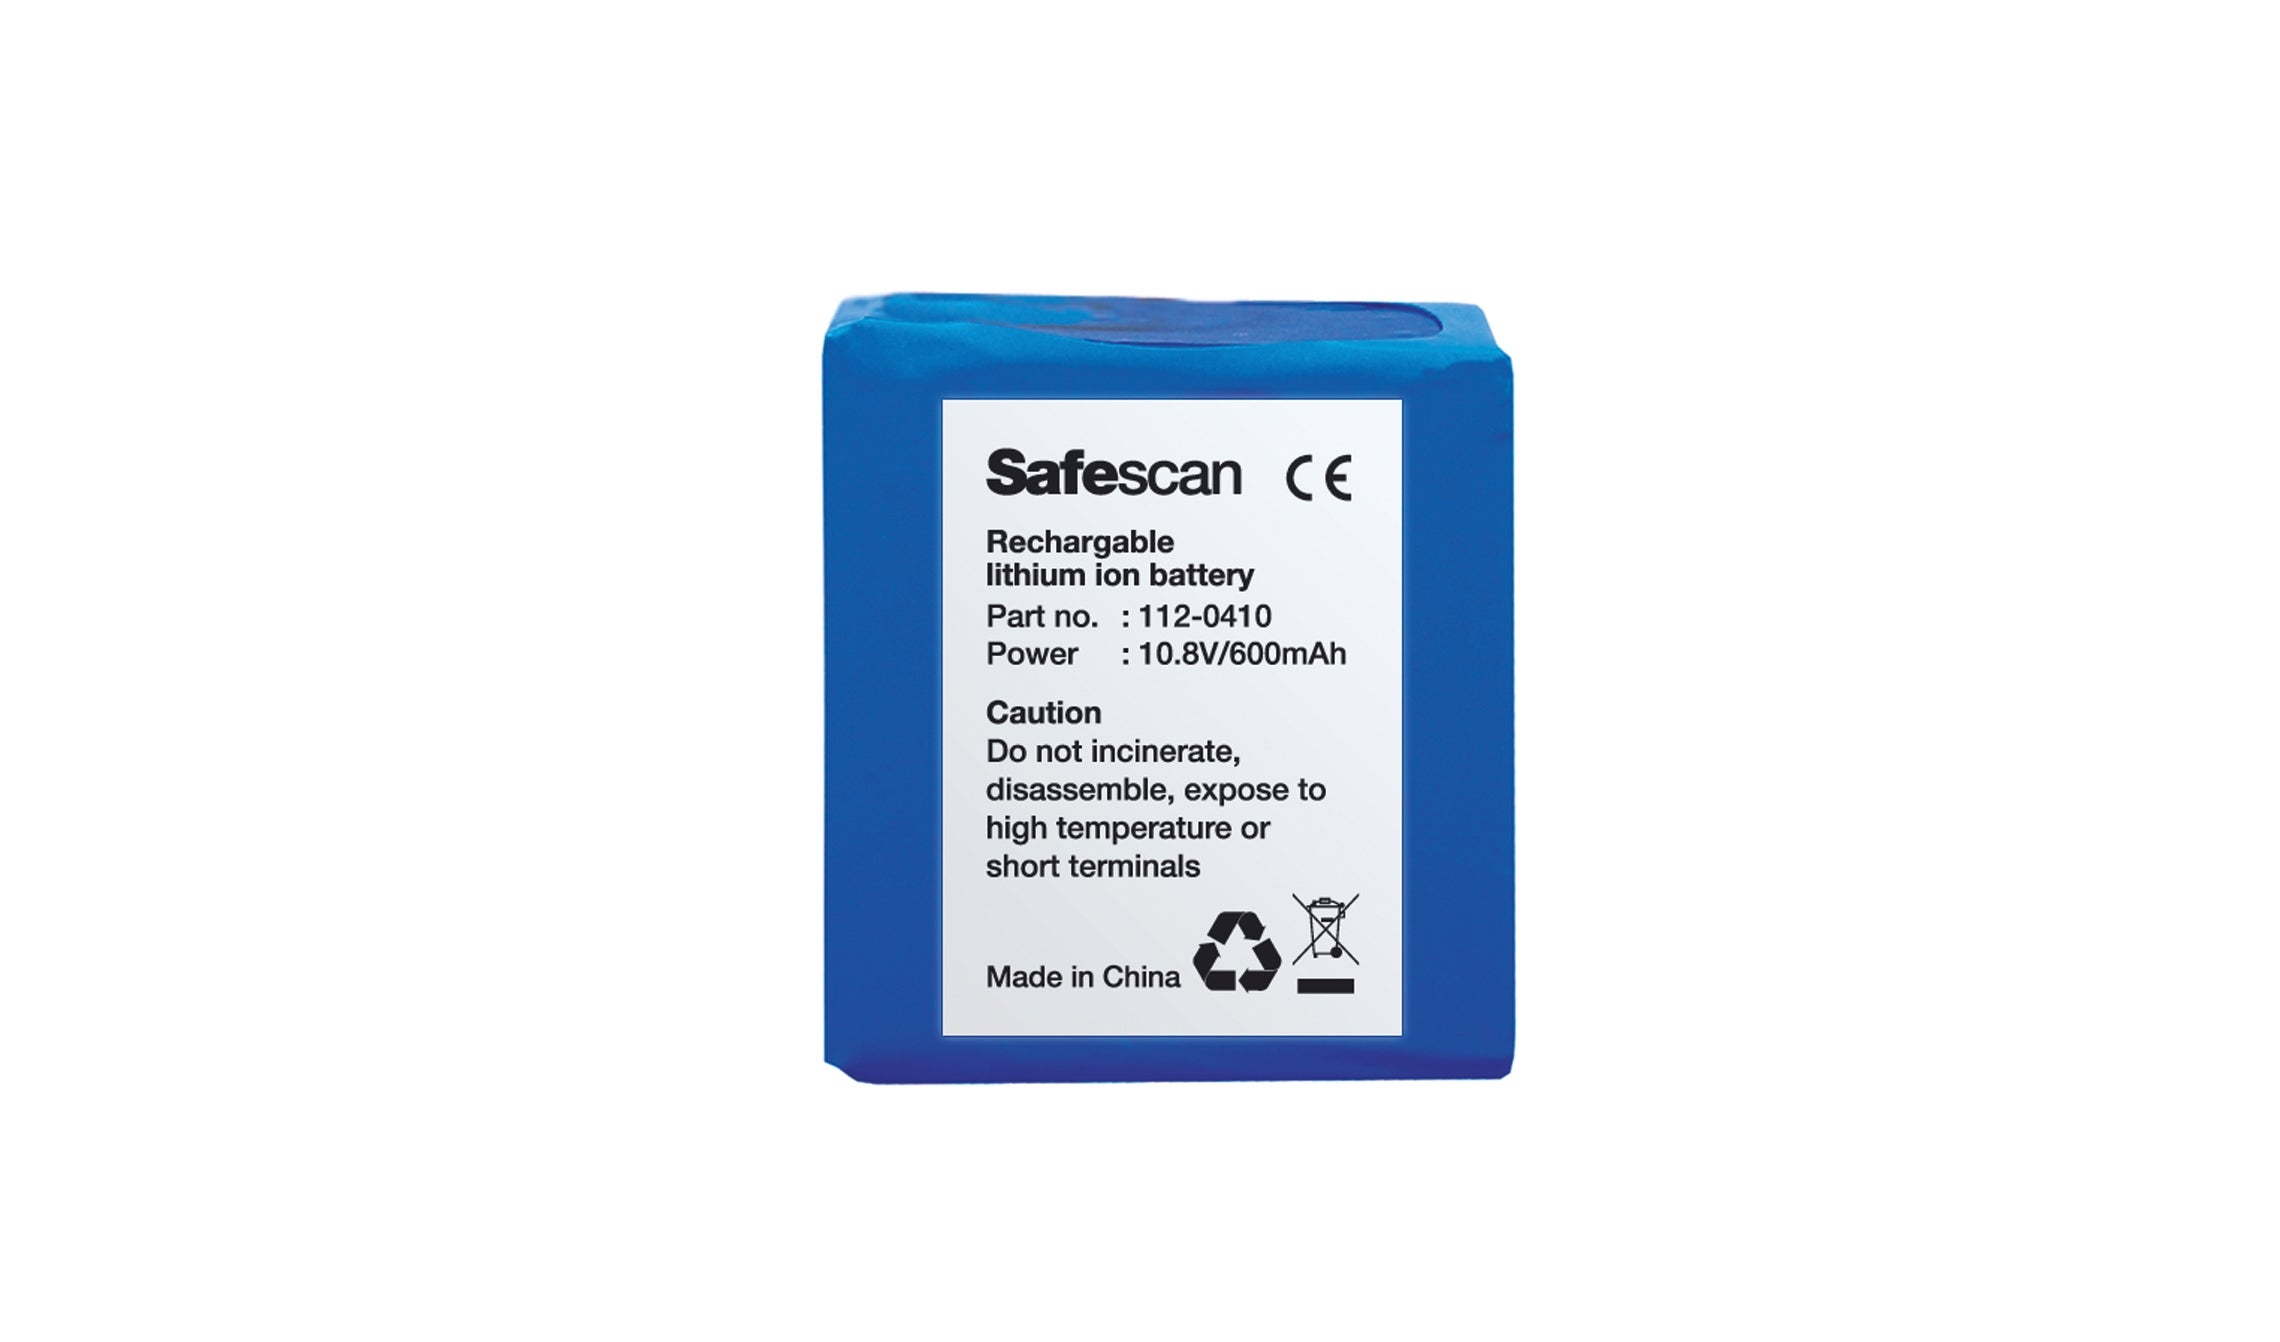 safescan-lb-105-batterie-rechargeable